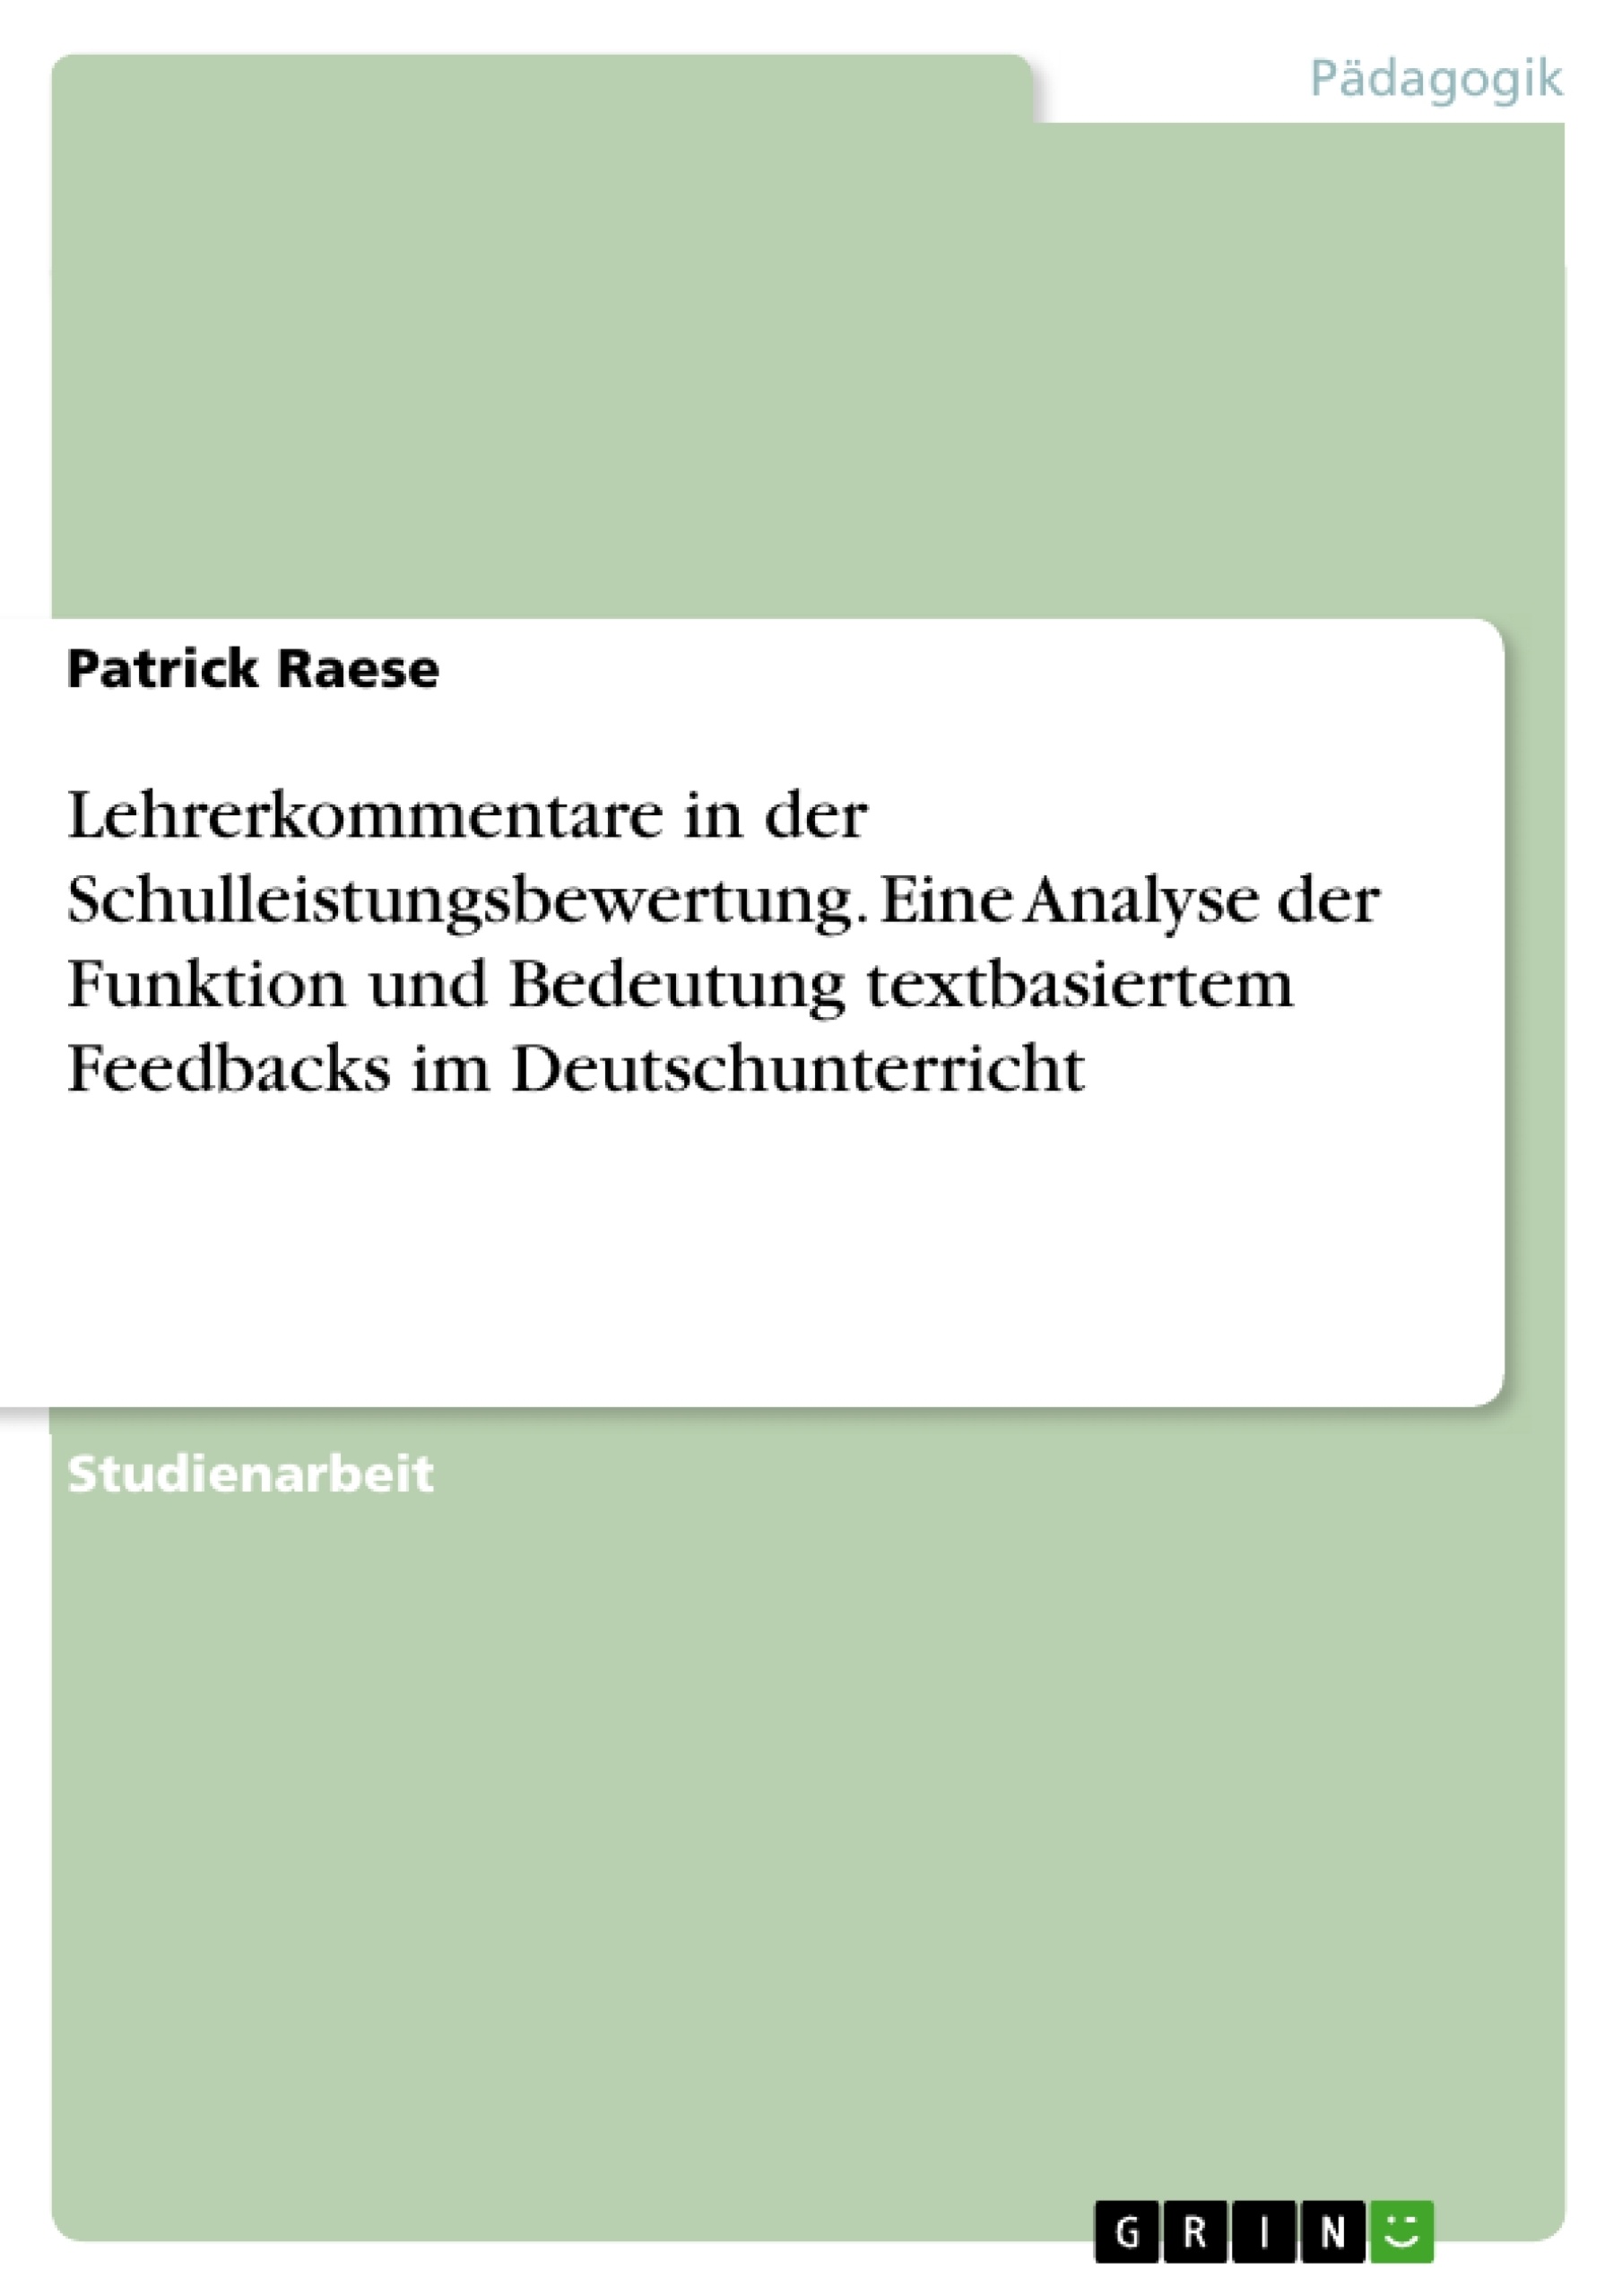 Title: Lehrerkommentare in der Schulleistungsbewertung. Eine Analyse der Funktion und Bedeutung textbasiertem Feedbacks im Deutschunterricht